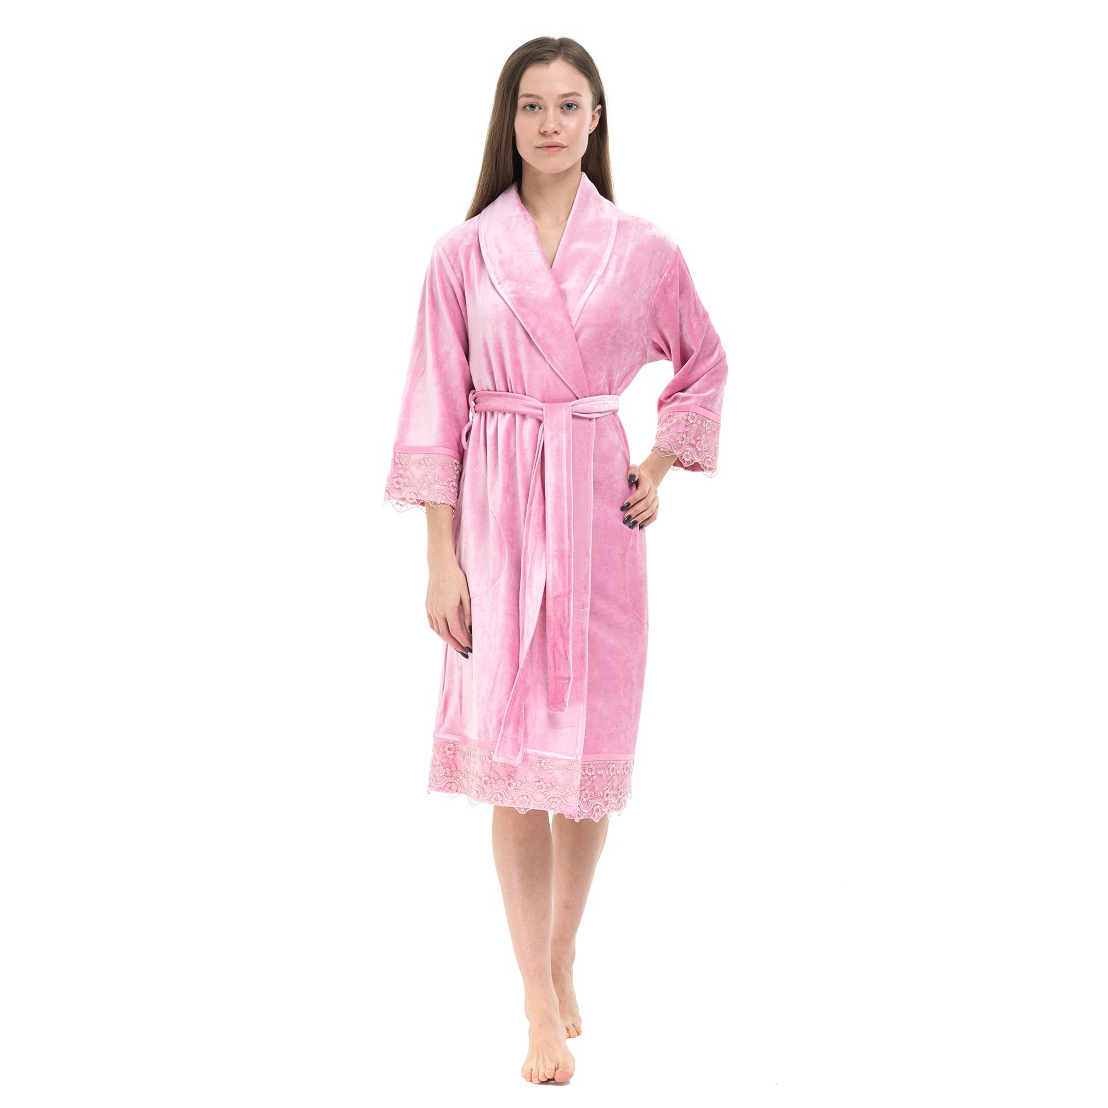 Банный халат Bettina цвет: розовый (XL) Nusa